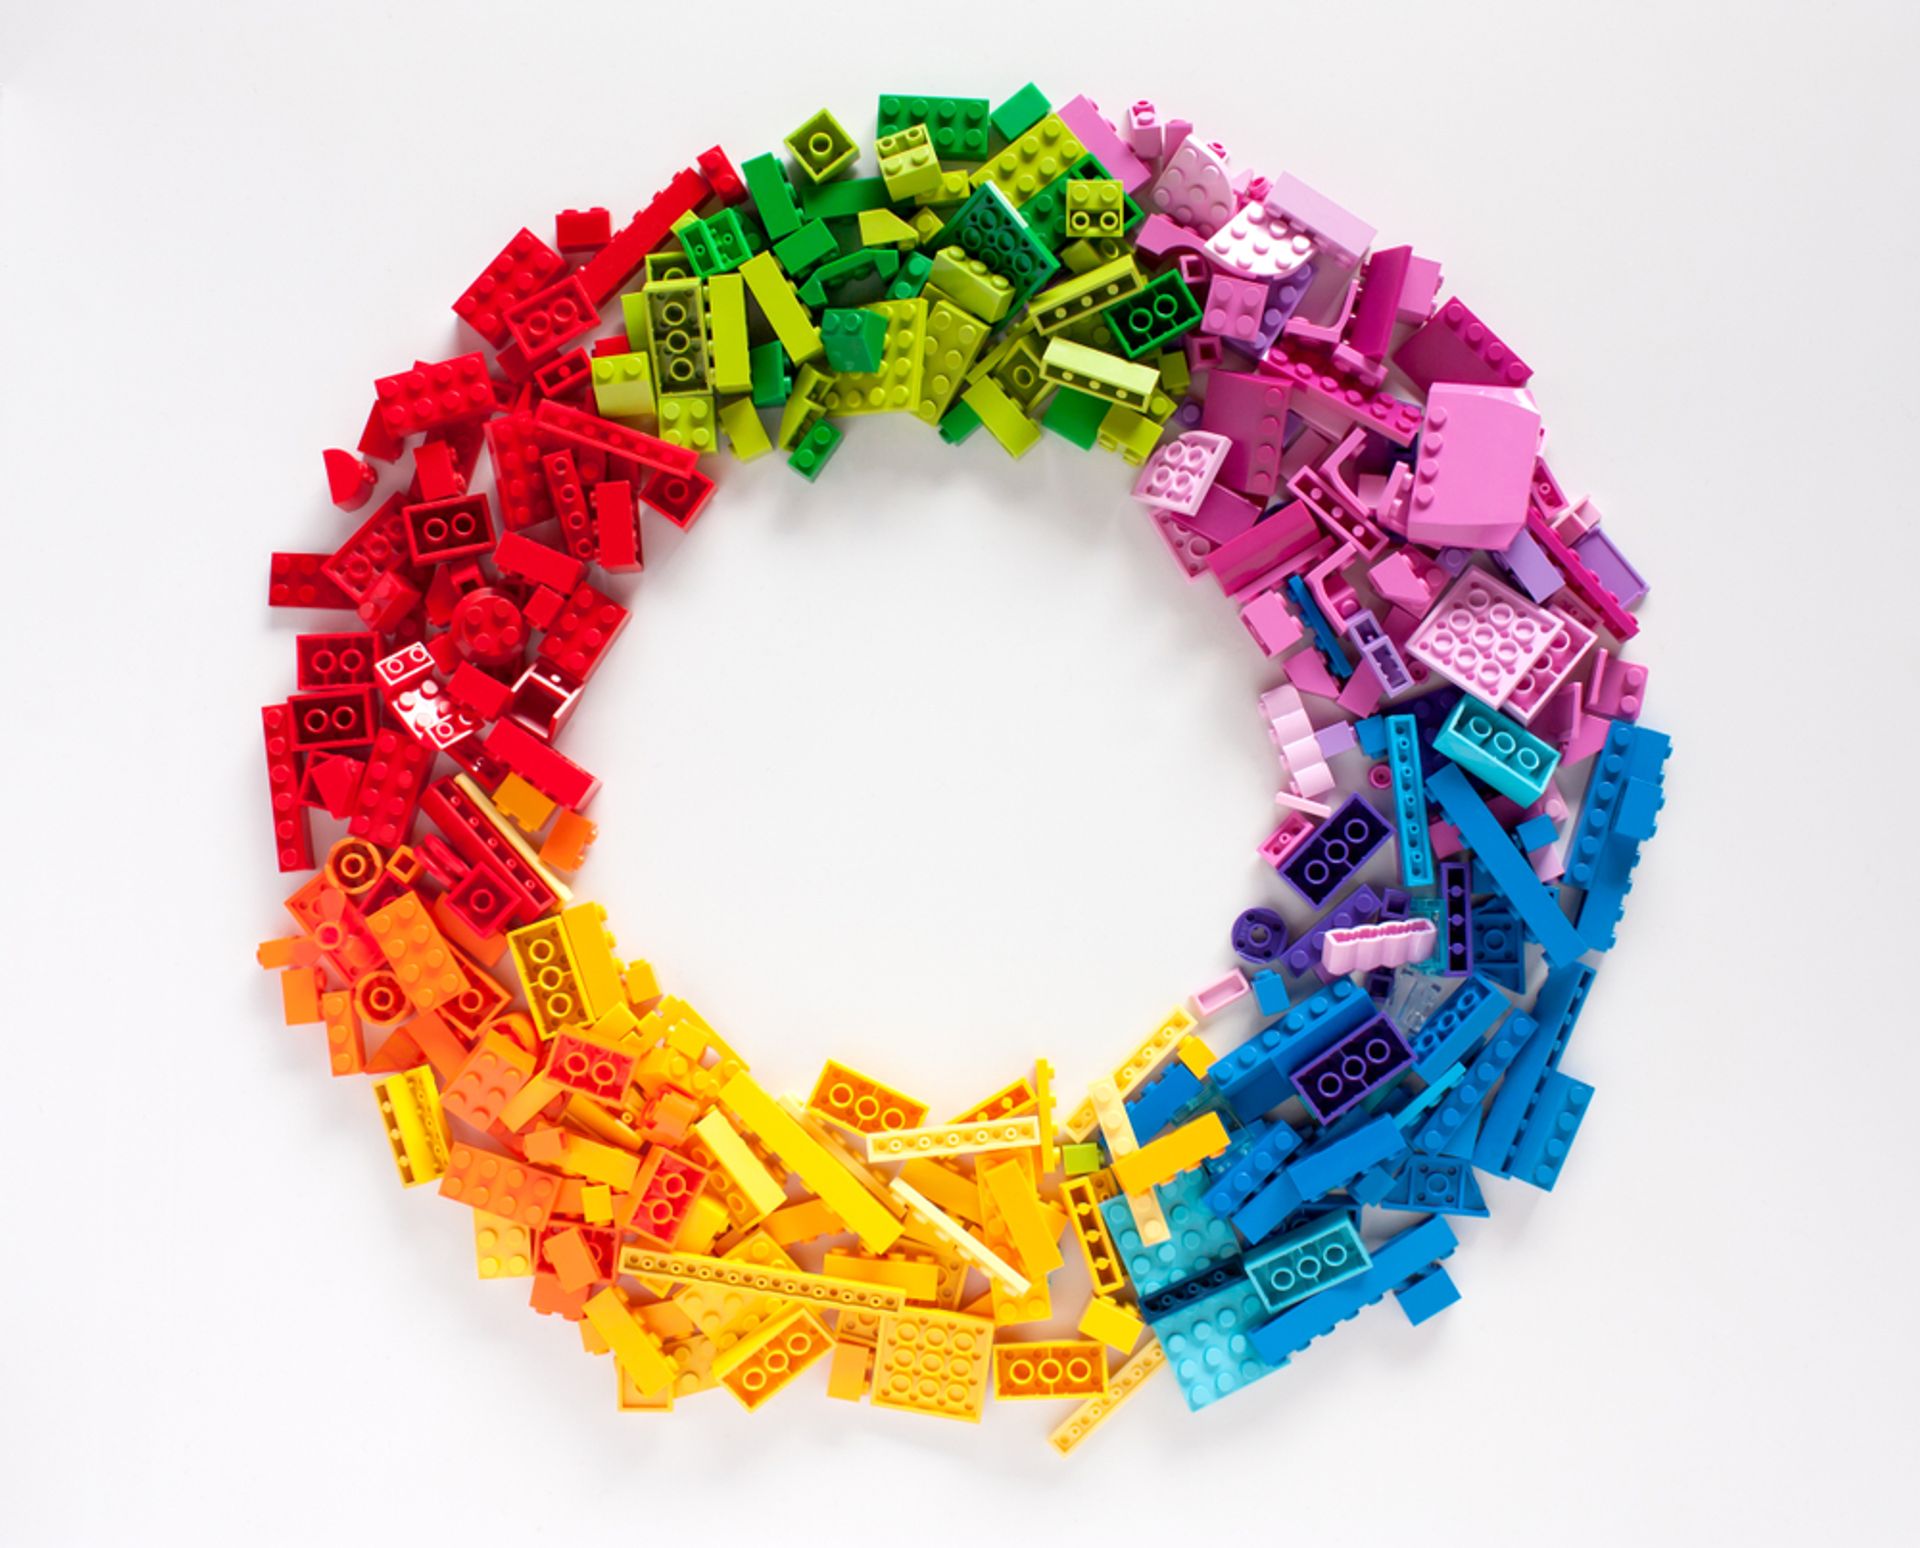 agenda Sneeuwstorm letterlijk Enig idee hoeveel verschillende kleuren LEGO steentjes er bestaan? |  Amazings.eu